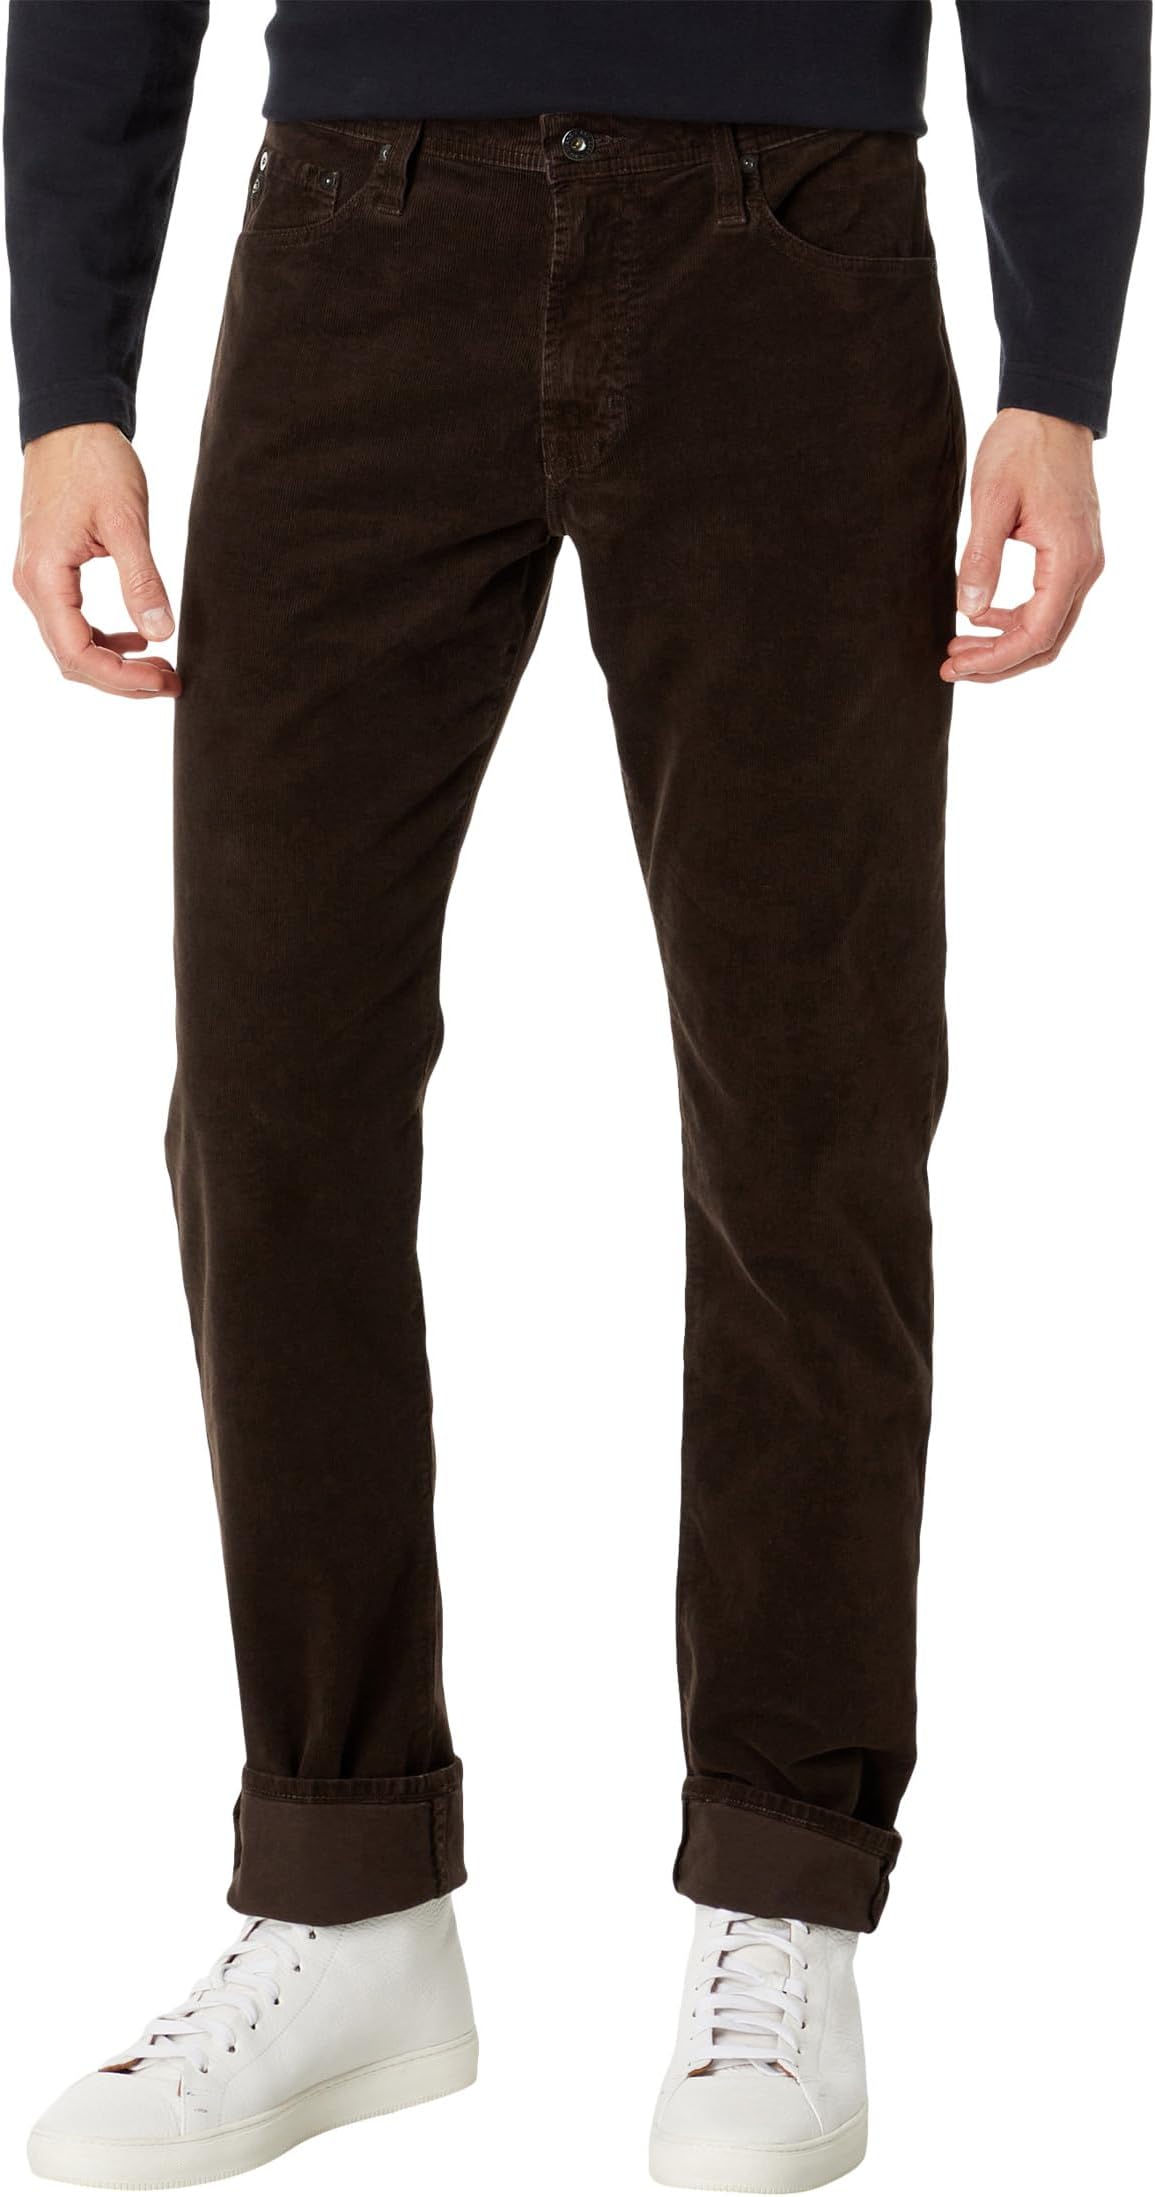 Узкие брюки прямого кроя Everett AG Jeans, цвет Sulfur Bitter Chocolate джинсы эластичного прямого кроя everett ag jeans цвет bundled